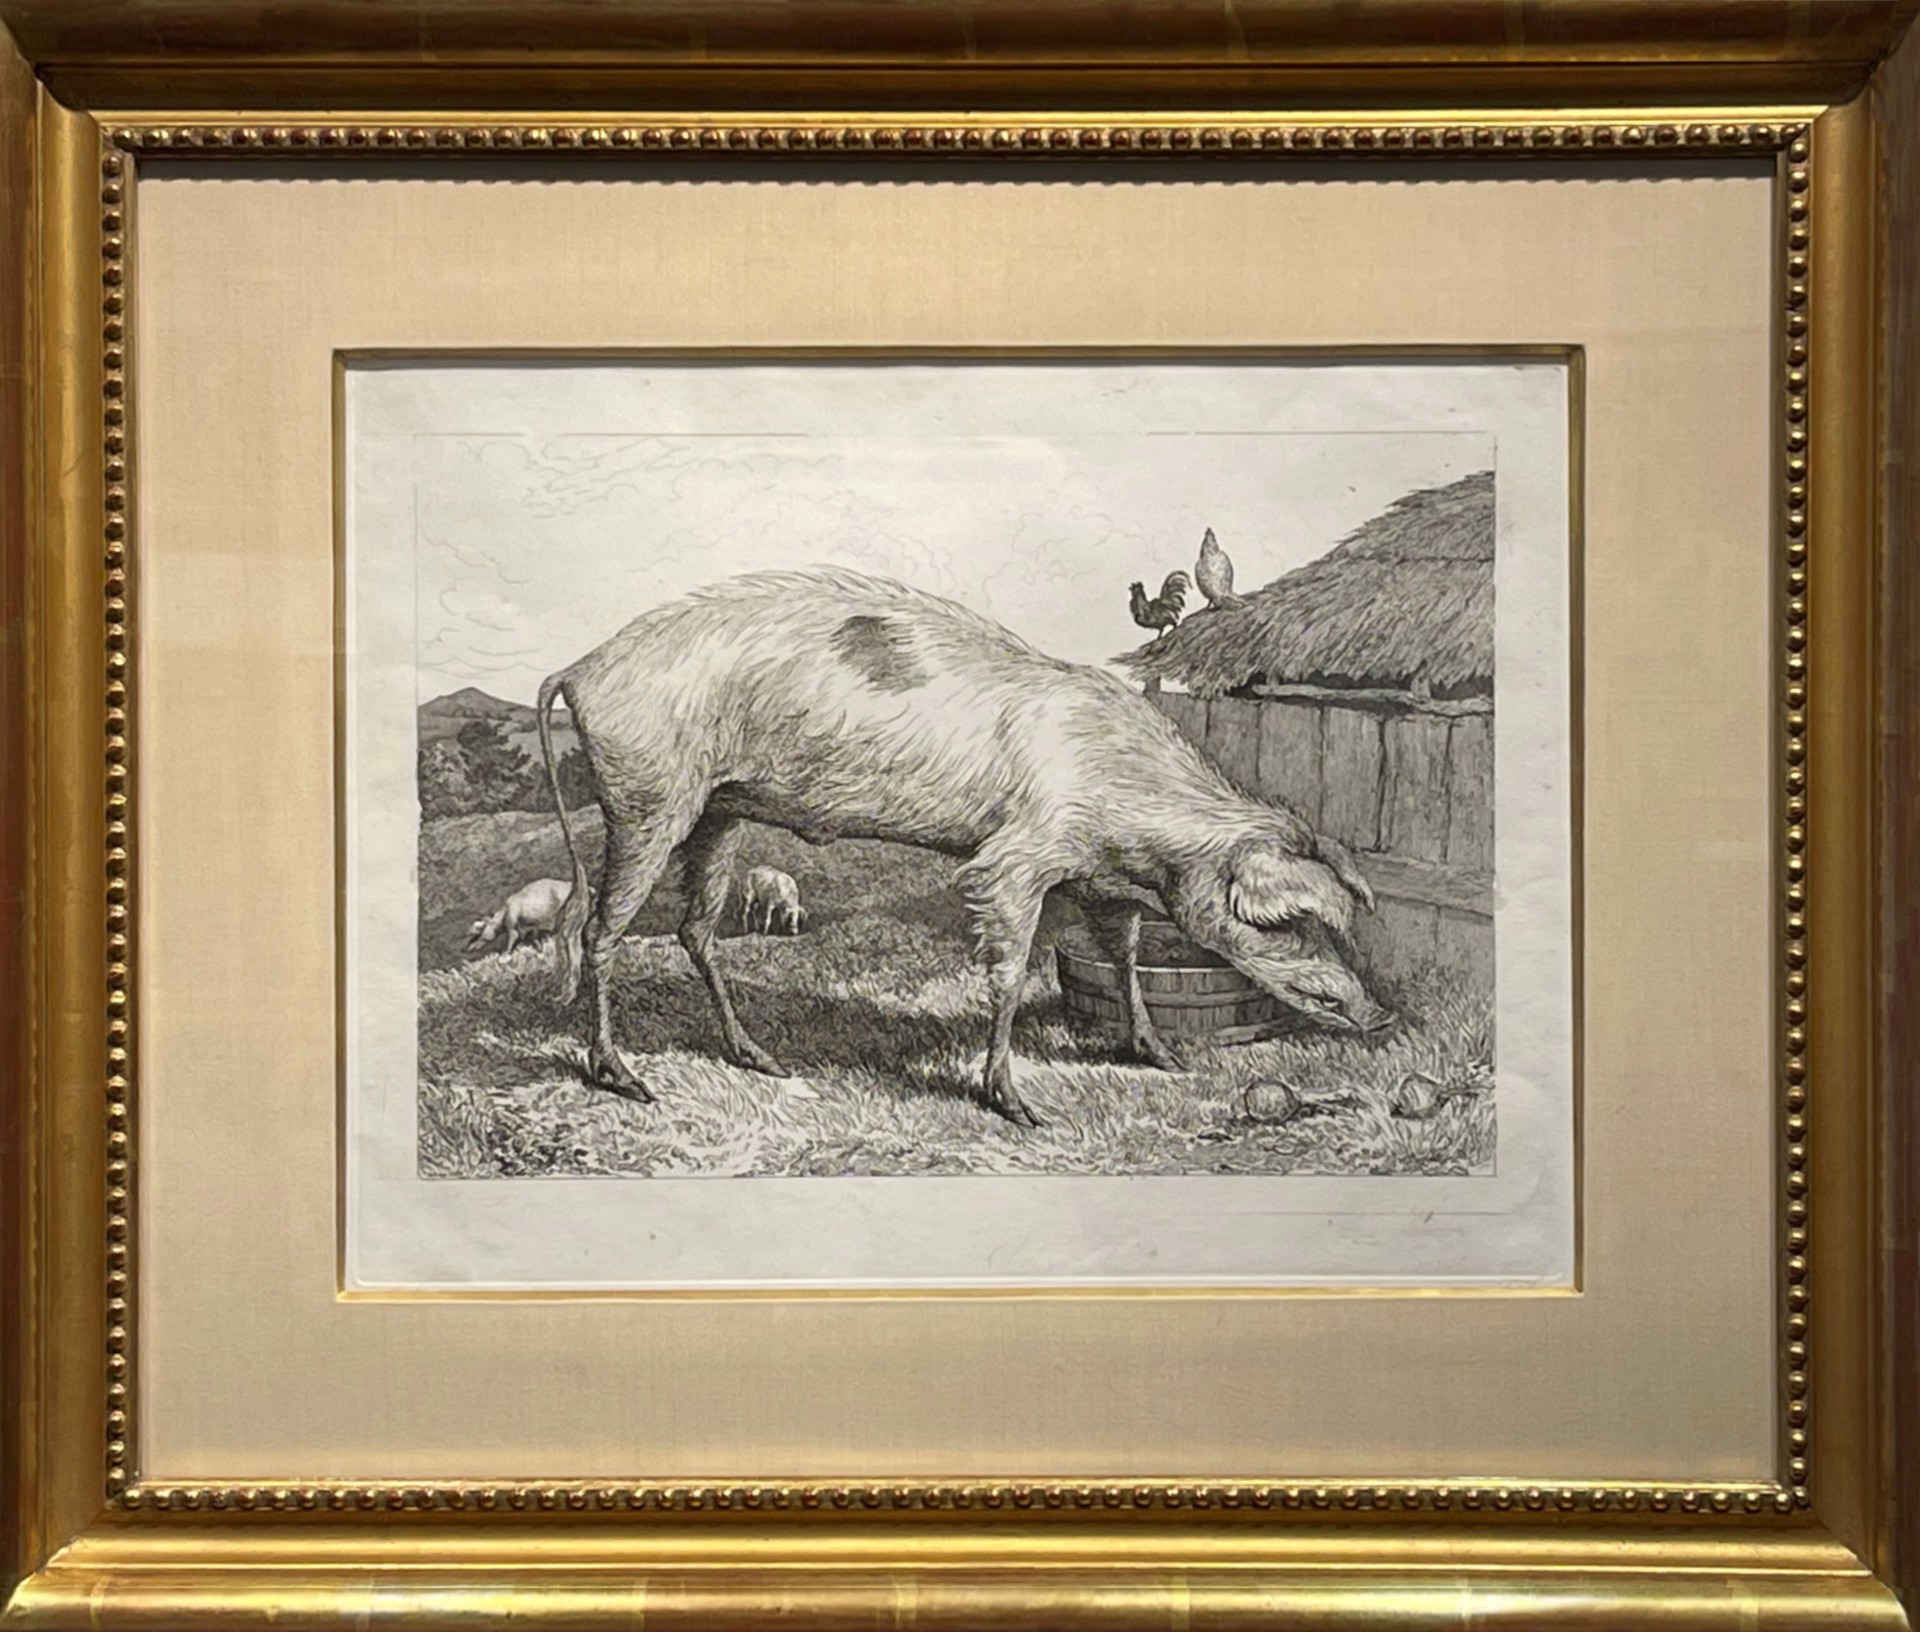 A French Hog, 1818 by Sir Edwin Landseer